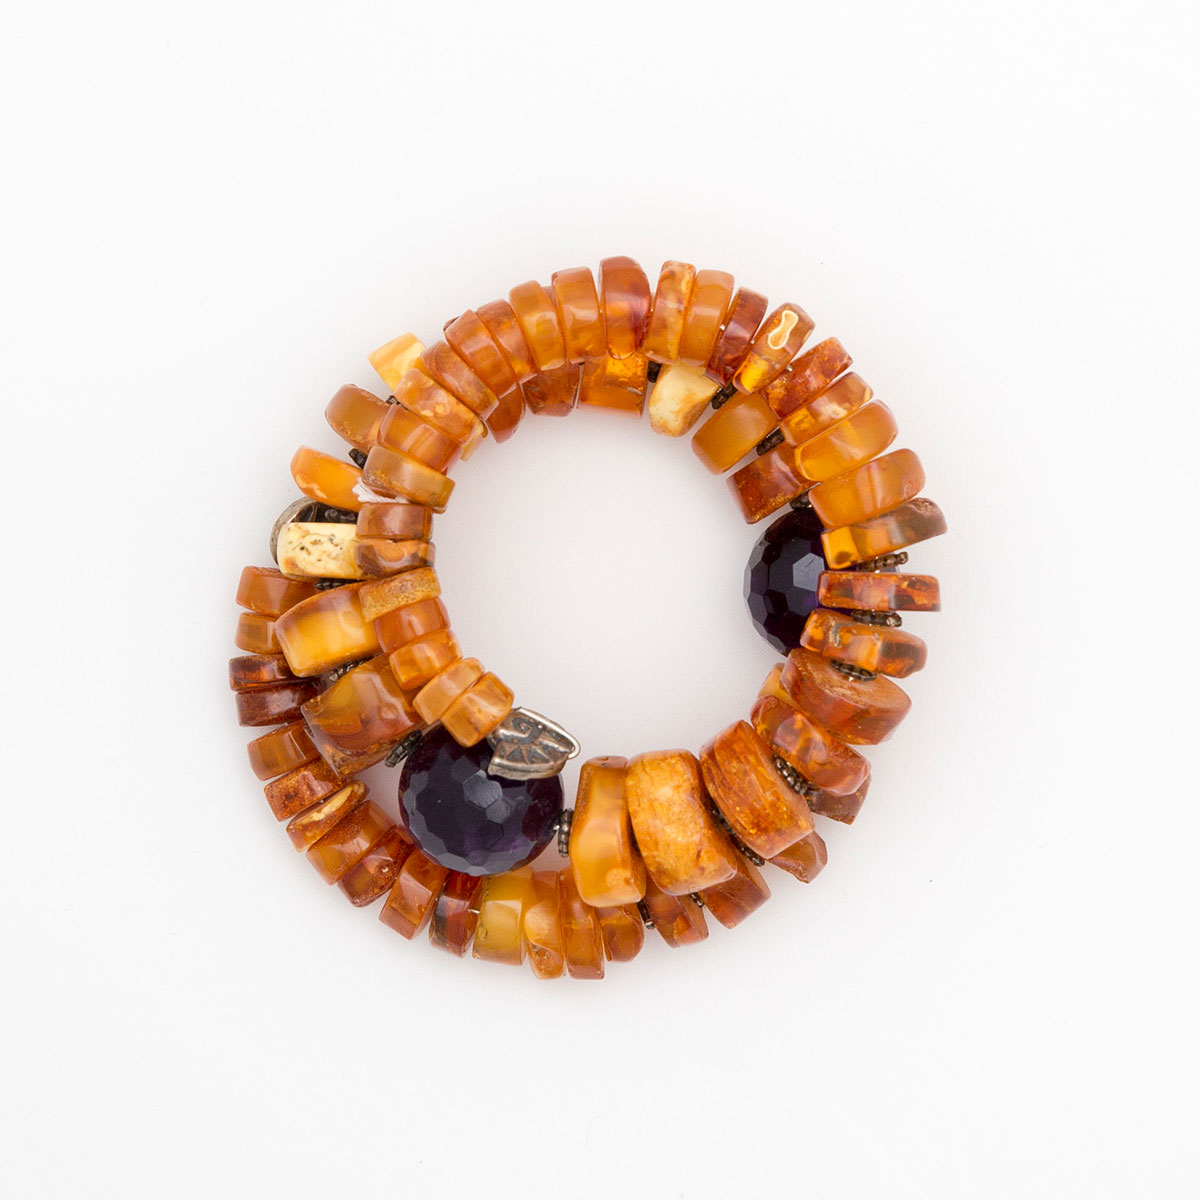 Bracelets made of Amber